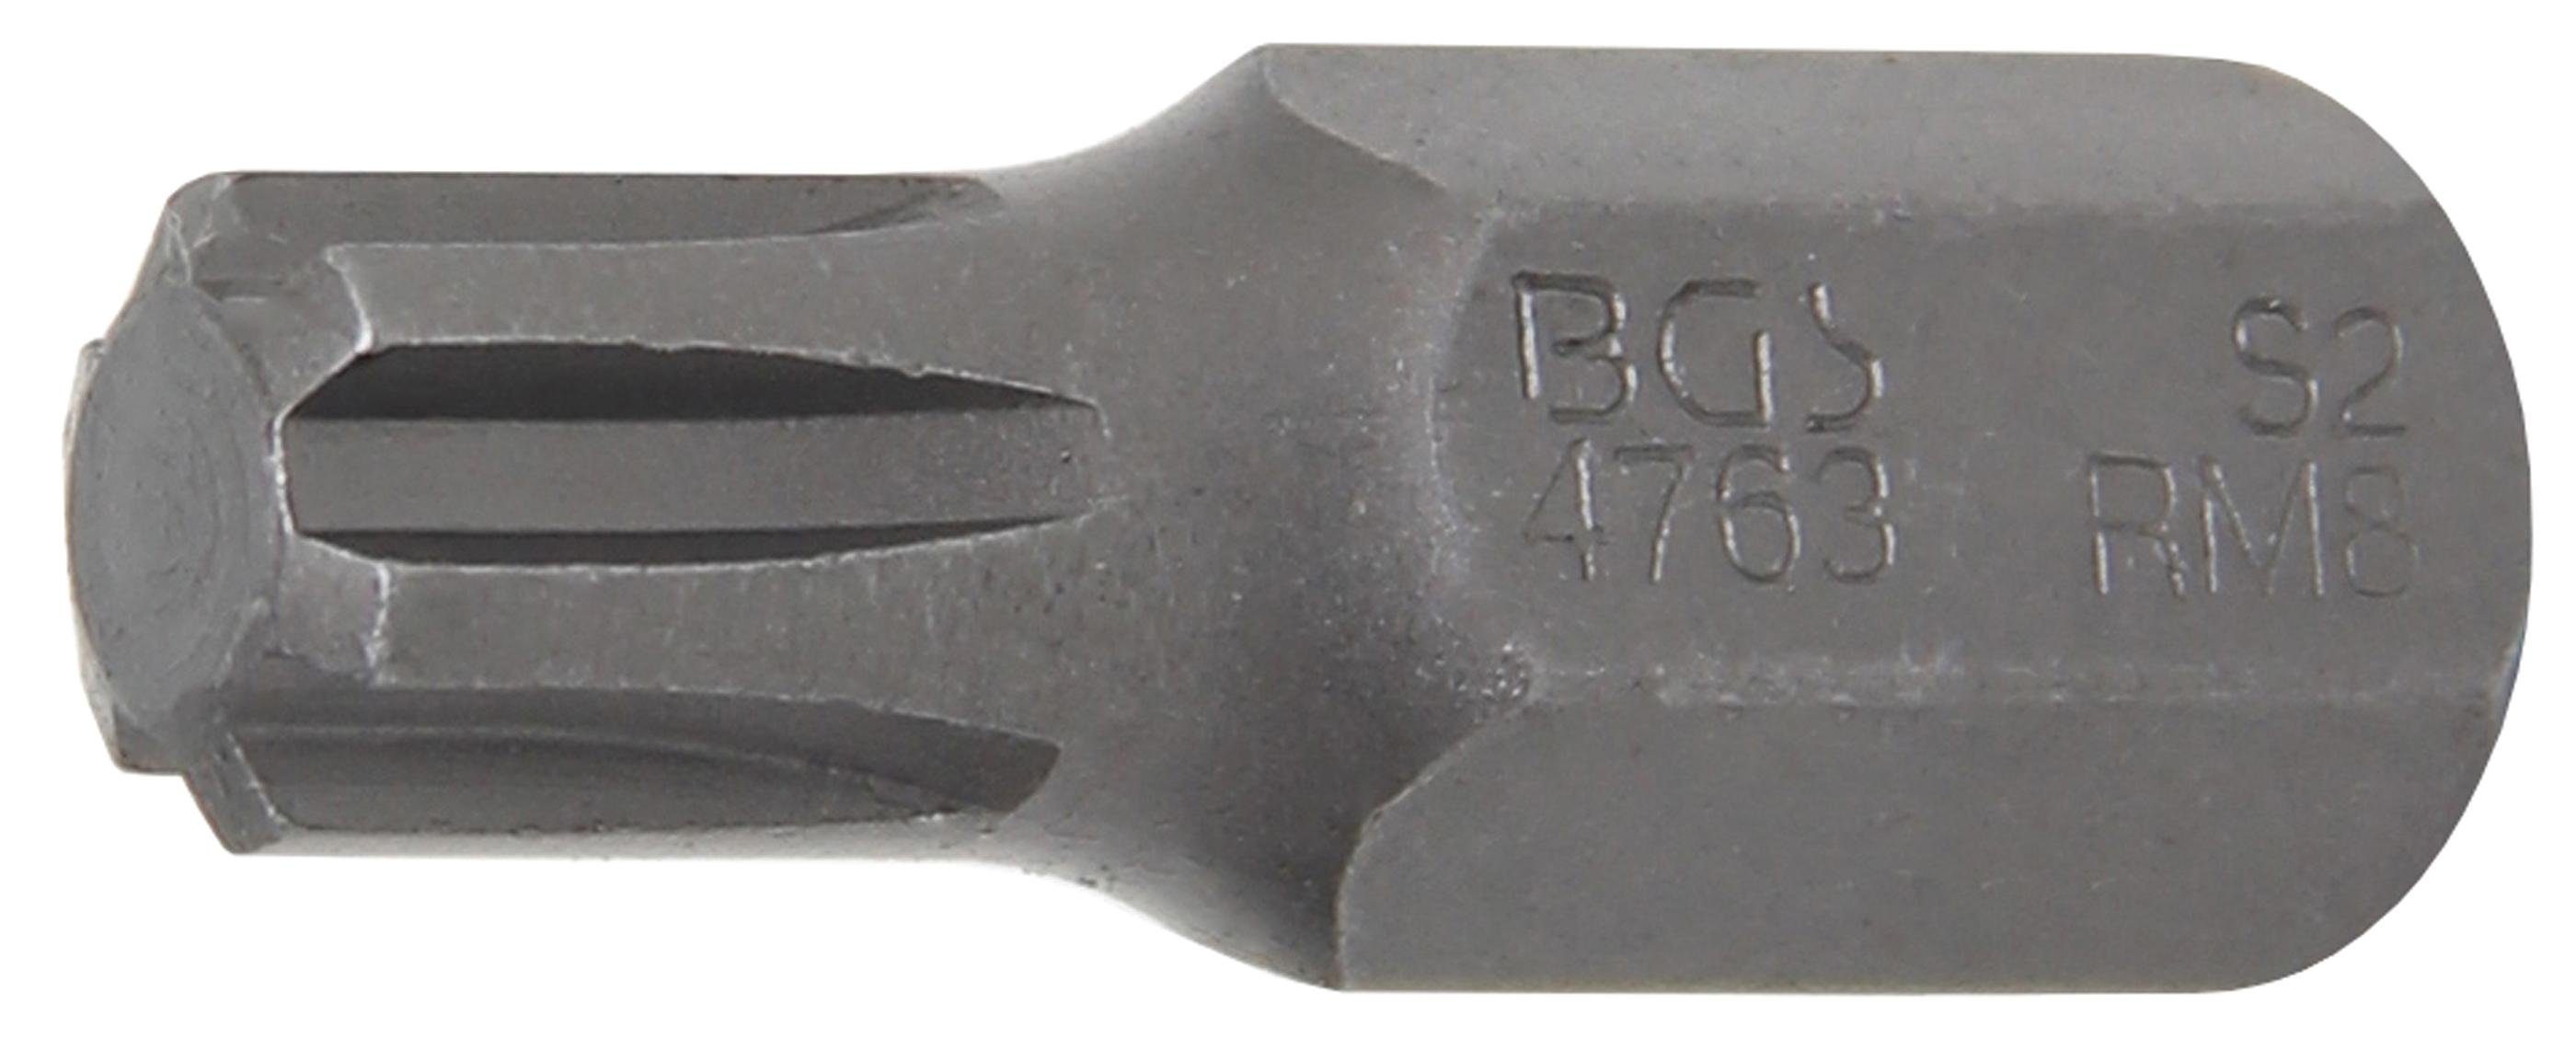 BGS technic 10 Bit-Schraubendreher Antrieb Außensechskant (für RIBE) Bit, mm Keil-Profil (3/8), M8